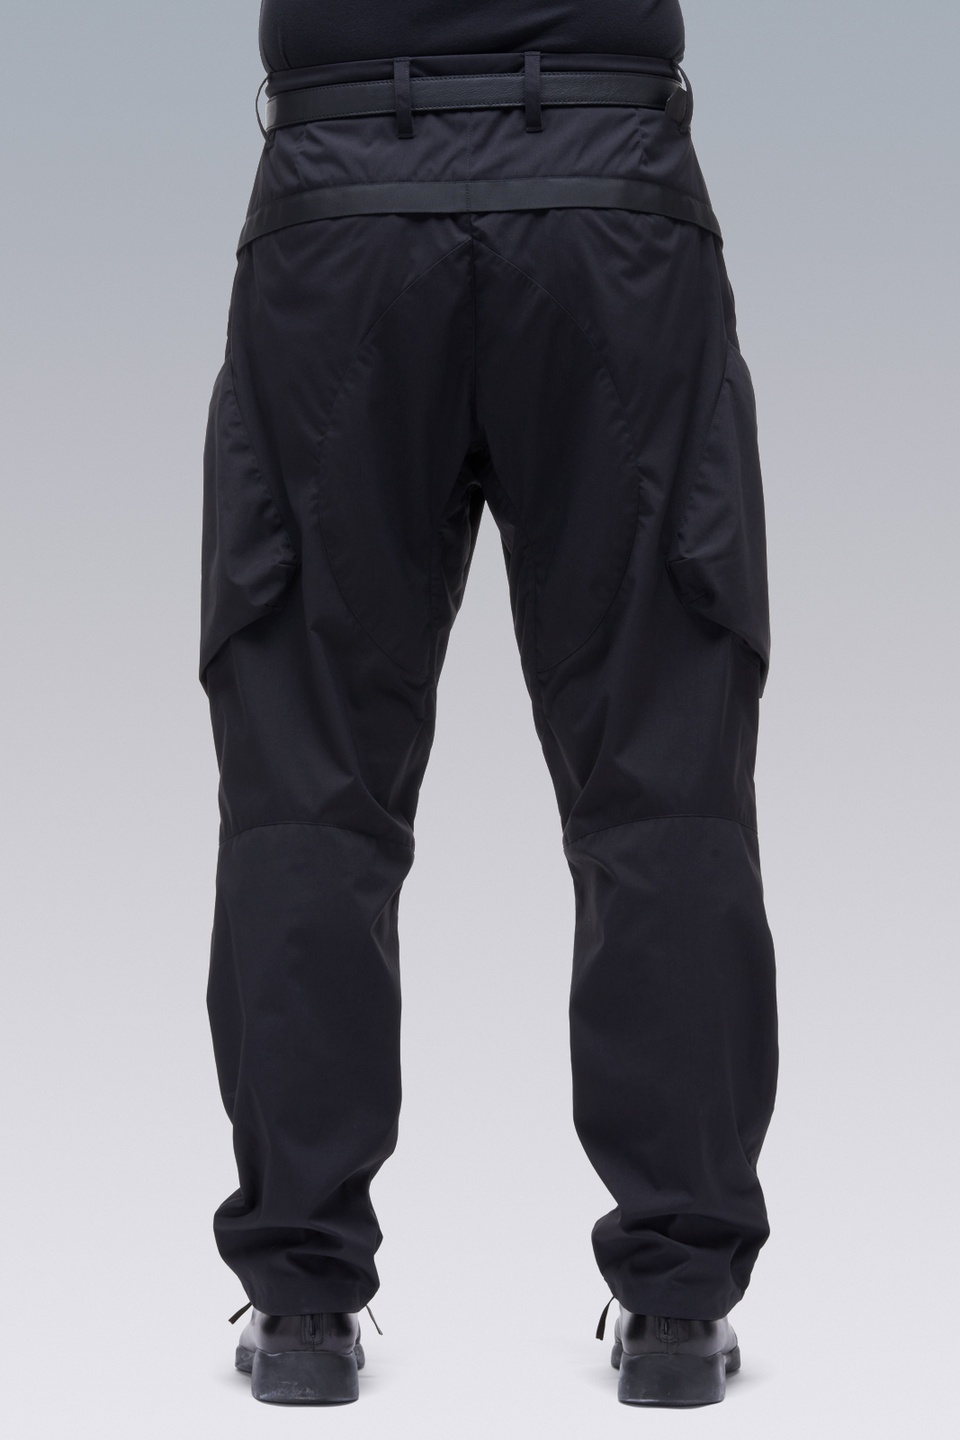 P24A-E Encapsulated Nylon Articulated BDU Trouser Black - 7